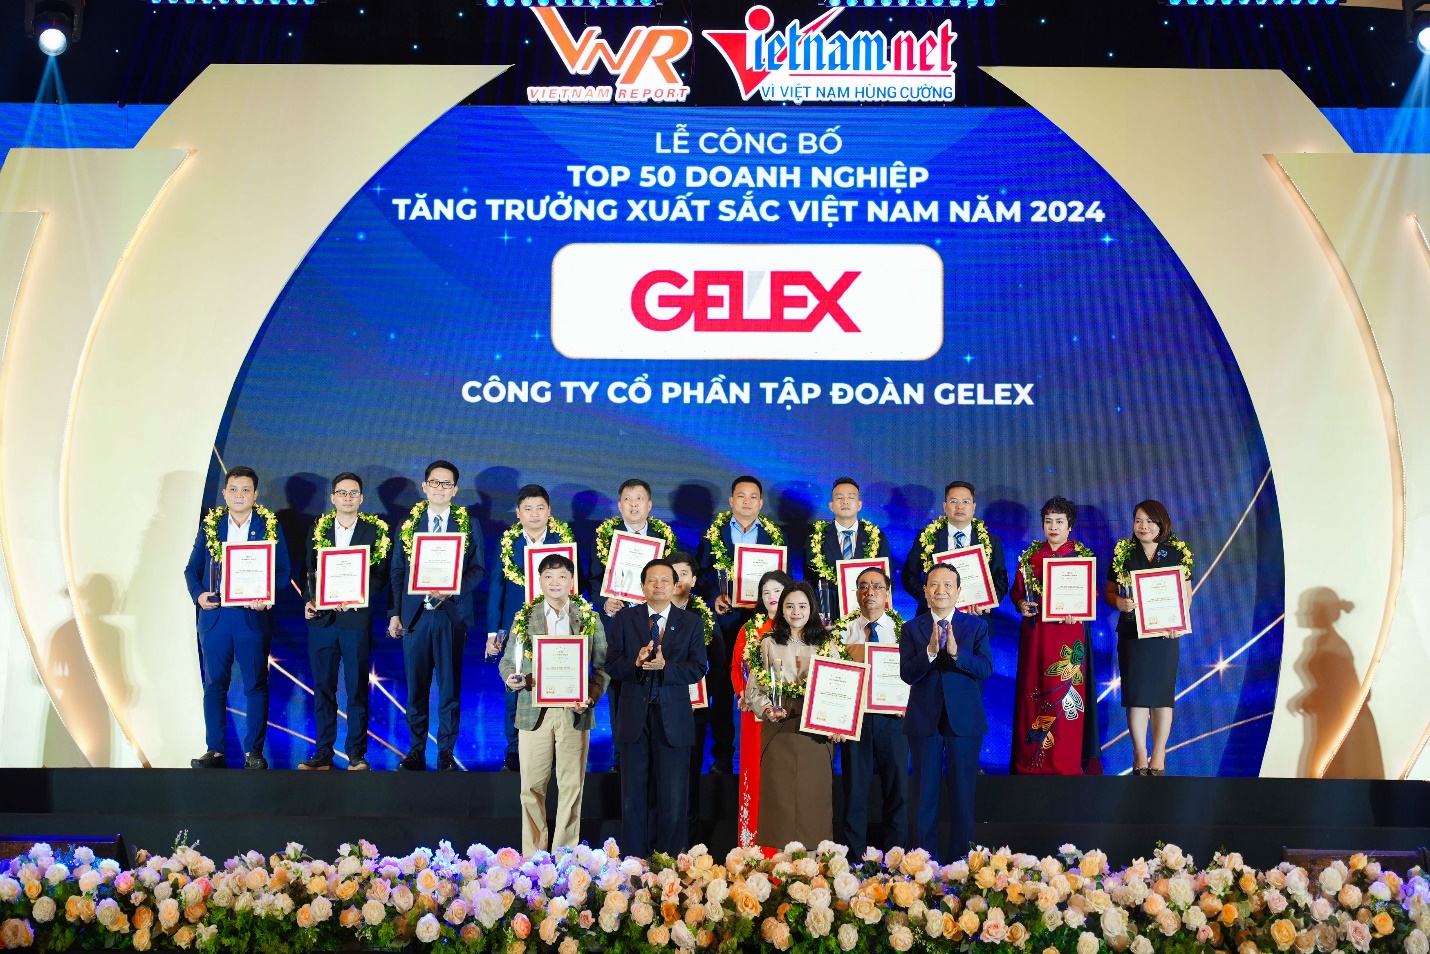 GELEX tiếp tục lọt Top 50 doanh nghiệp tăng trưởng xuất sắc Việt Nam 2024- Ảnh 1.